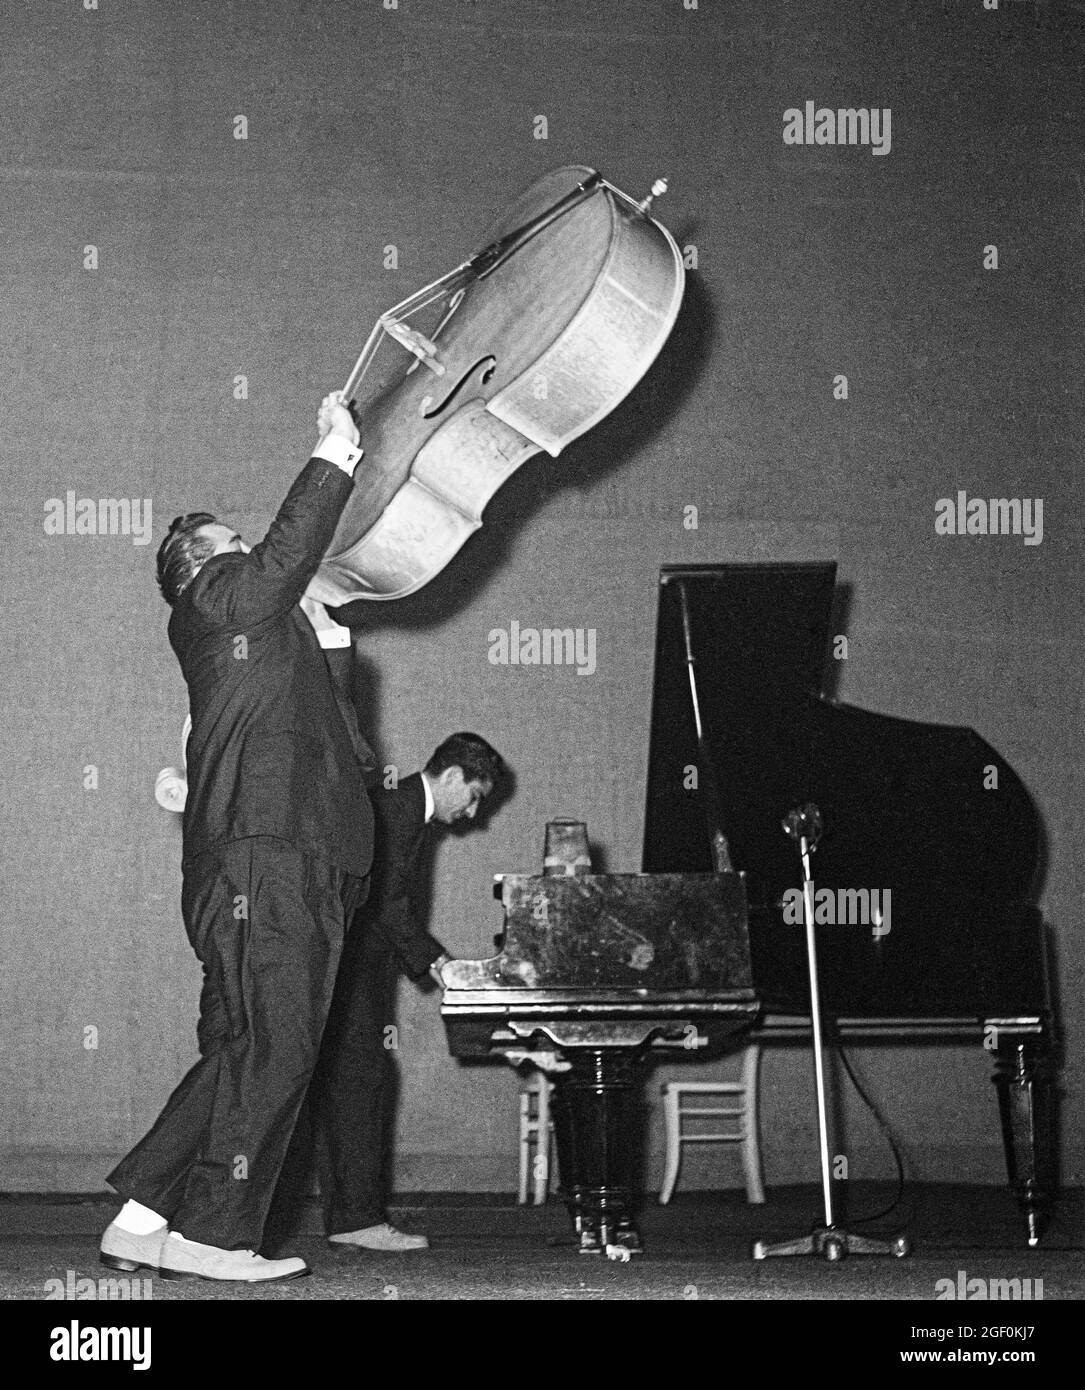 1958 de noviembre, Bill Haley y sus Comets actuando en el escenario, Al Rex levantando su contrabajo, Johnny Grande piano, Estrasburgo, Alsacia, Francia, Europa, Foto de stock